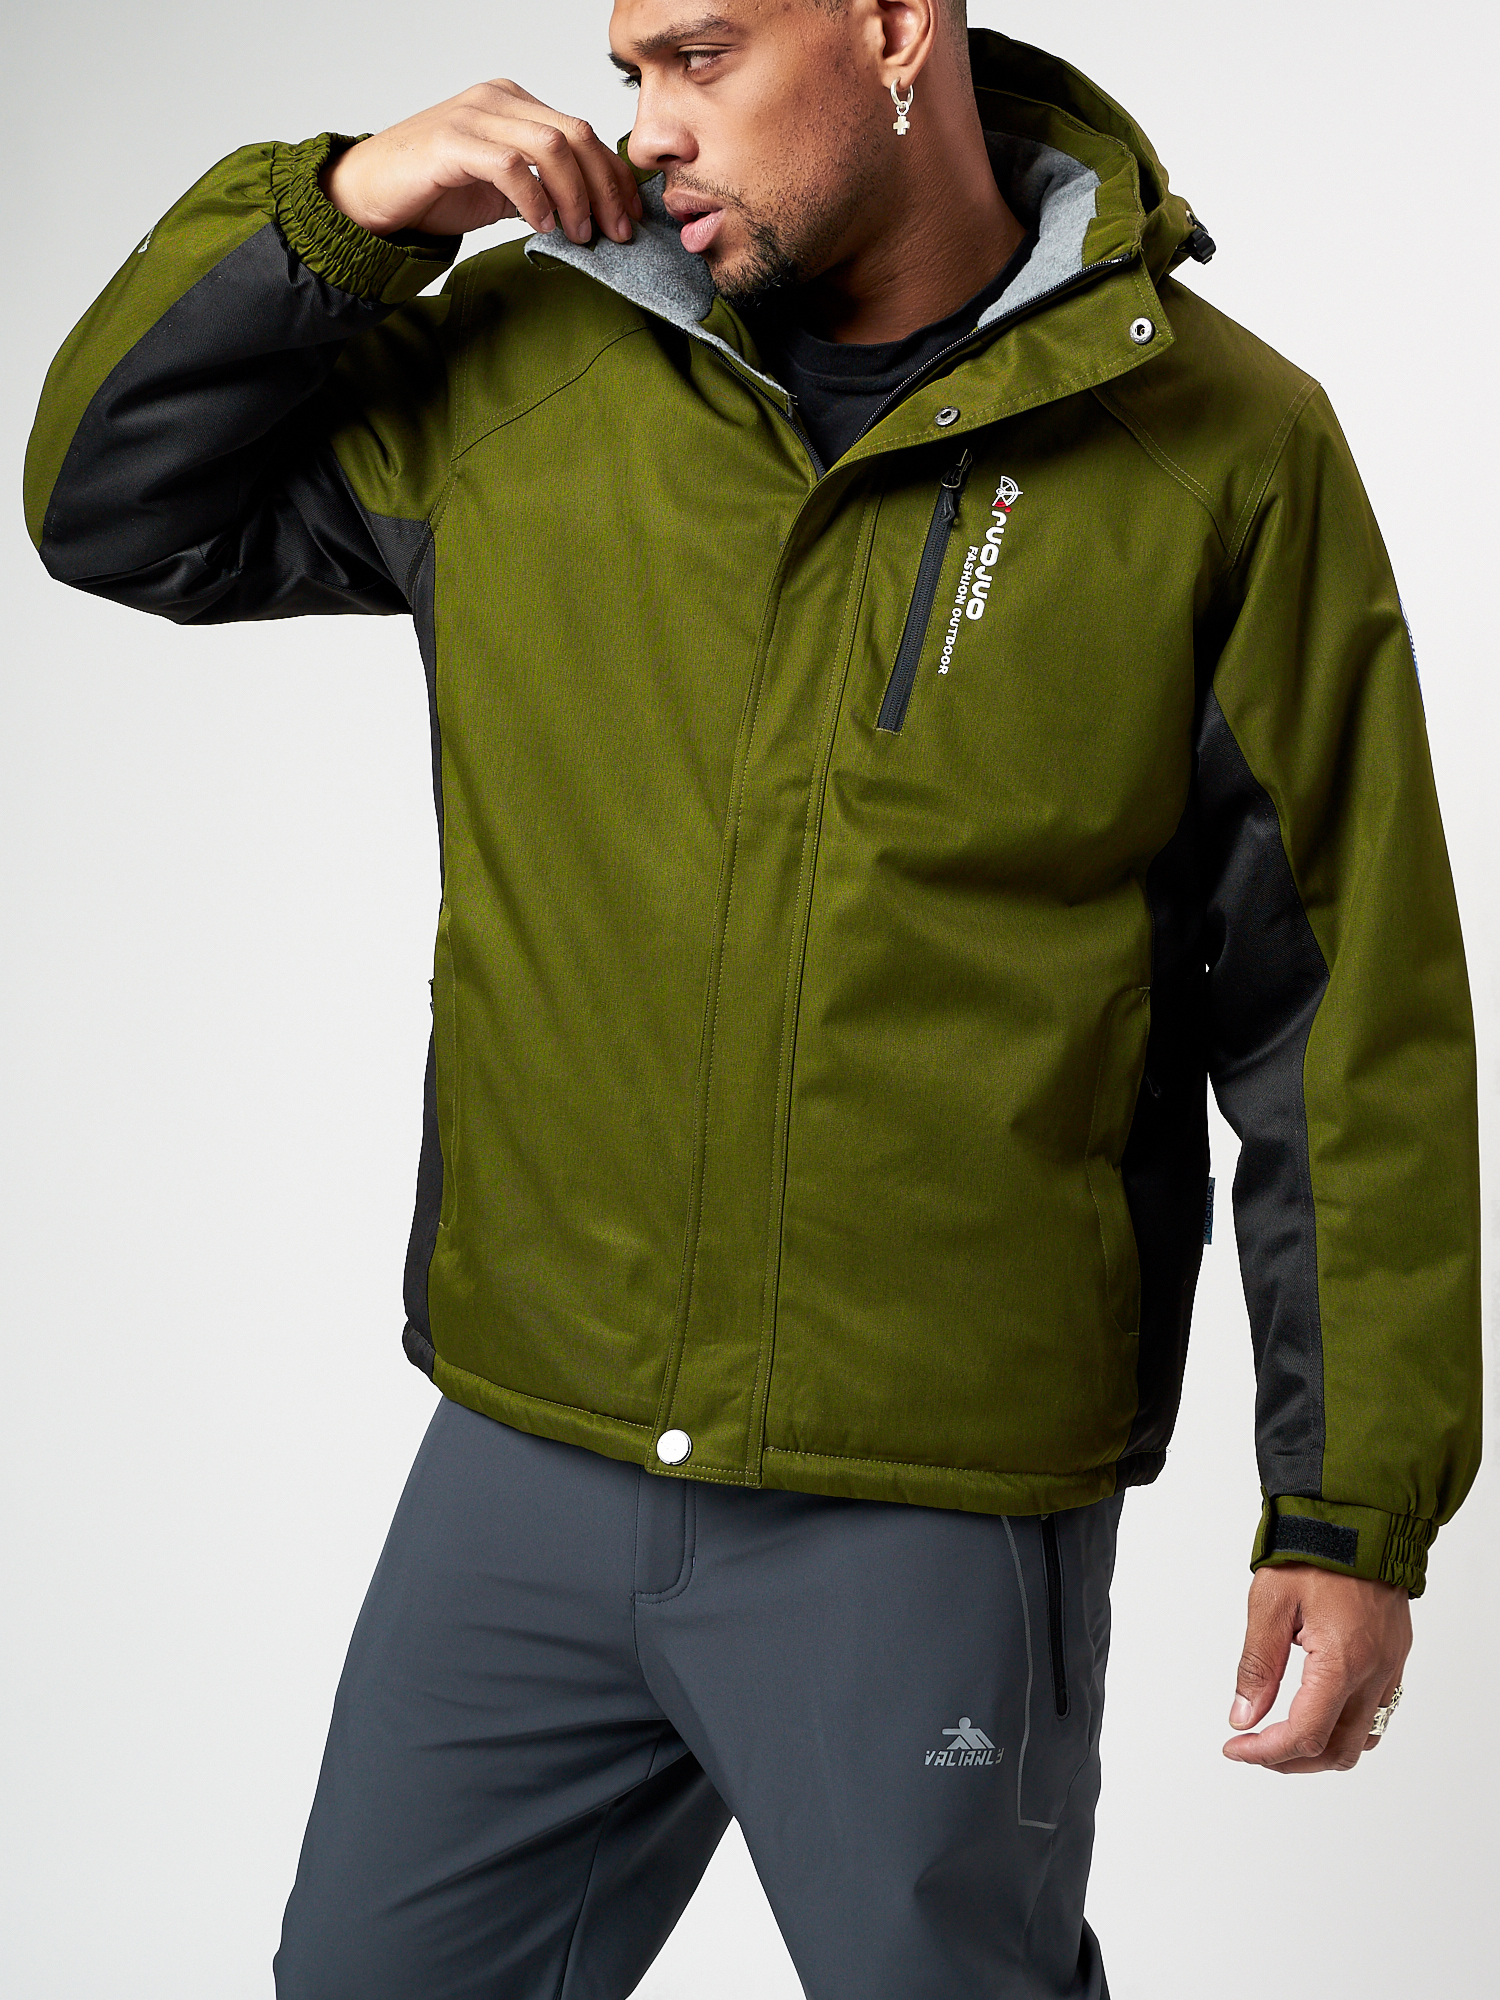 Купить Спортивная куртка мужская зимняя цвета хаки 78016Kh